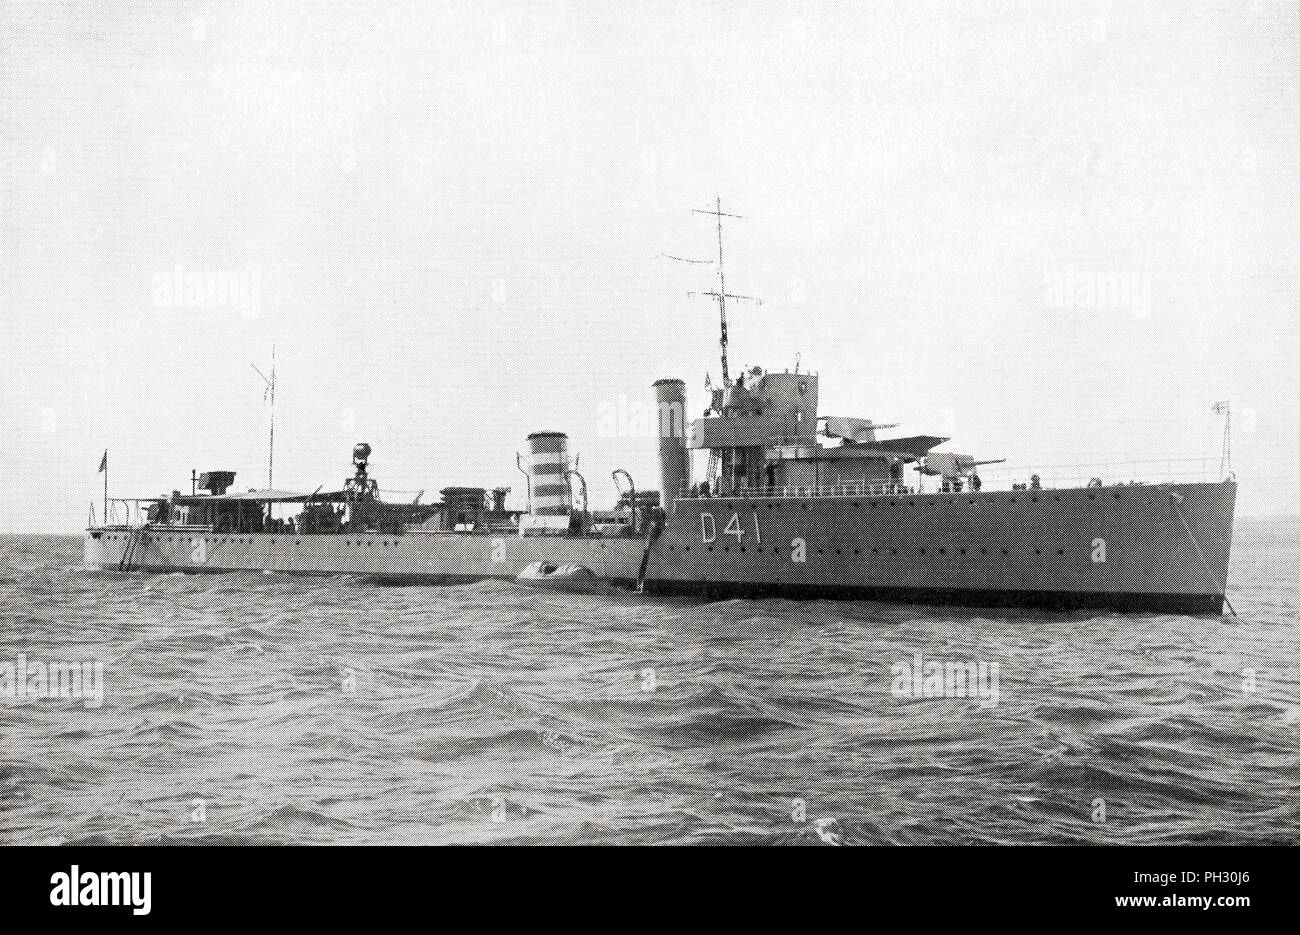 Le HMS Walpole (D41) un W-class destroyer de la Marine royale britannique. Les bandes blanches sur le deuxième entonnoir faisaient partie d'un code par lequel le nom du navire a été reconnu d'une certaine distance. Du livre de navires, publié vers 1920. Banque D'Images